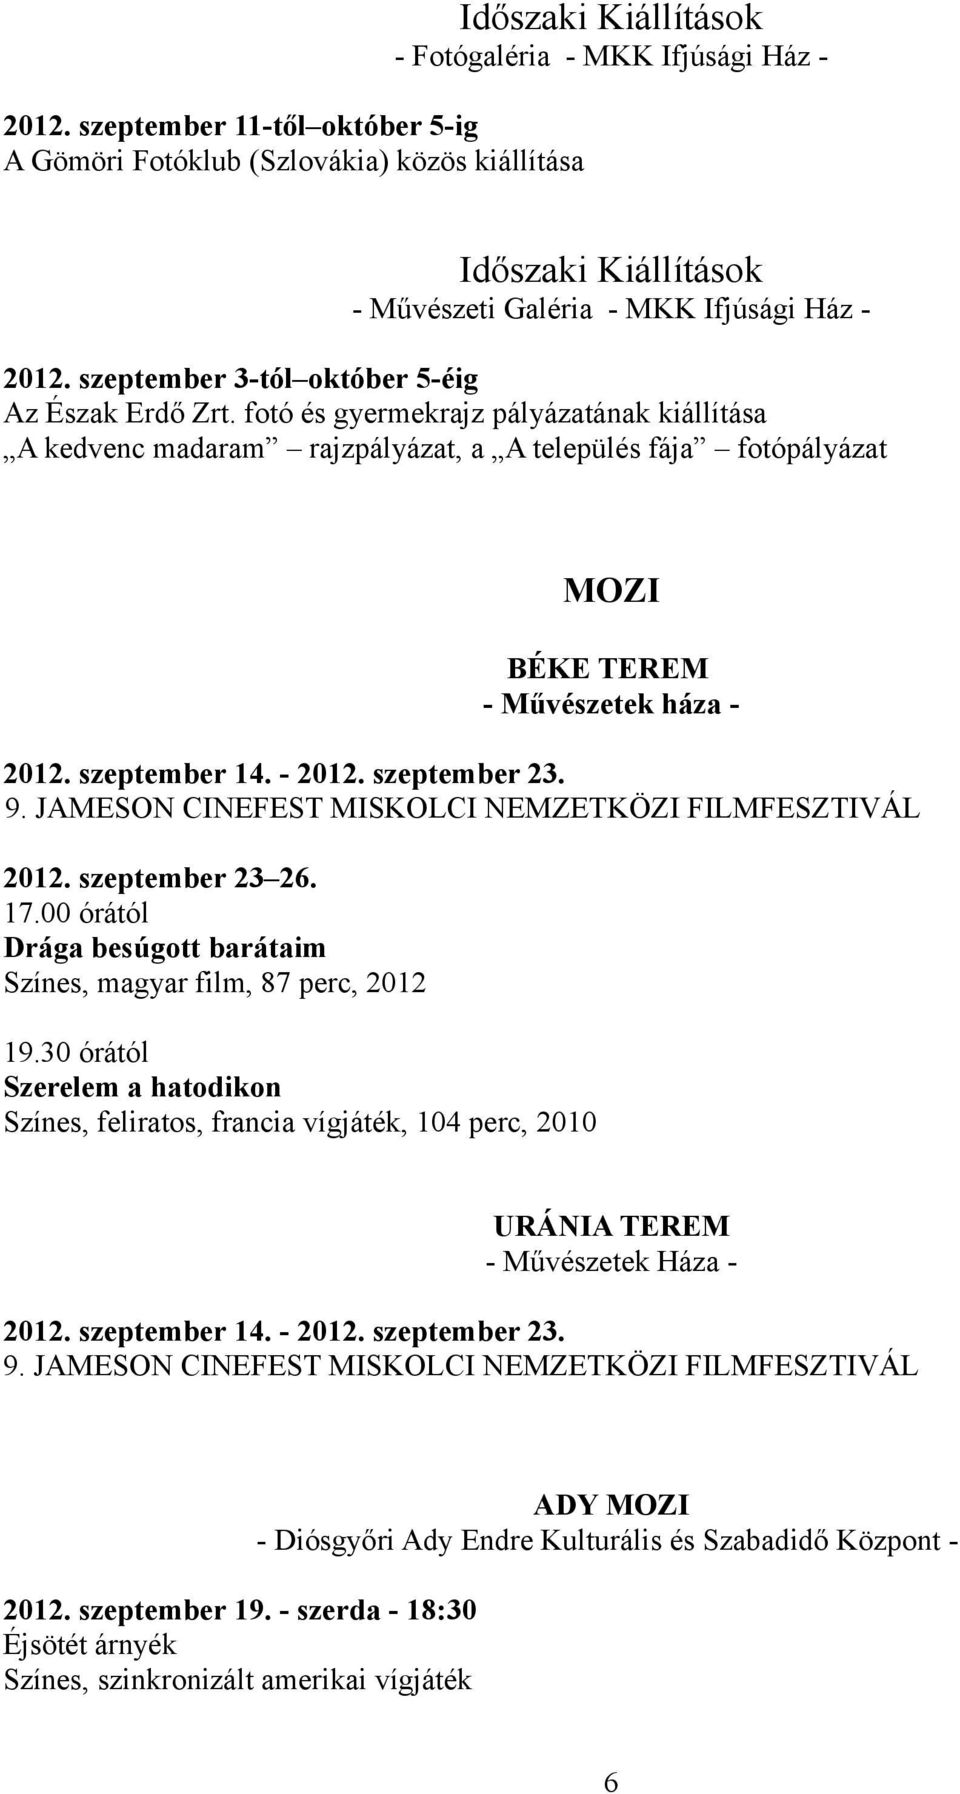 szeptember 14. - 2012. szeptember 23. 9. JAMESON CINEFEST MISKOLCI NEMZETKÖZI FILMFESZTIVÁL 2012. szeptember 23 26. 17.00 órától Drága besúgott barátaim Színes, magyar film, 87 perc, 2012 19.